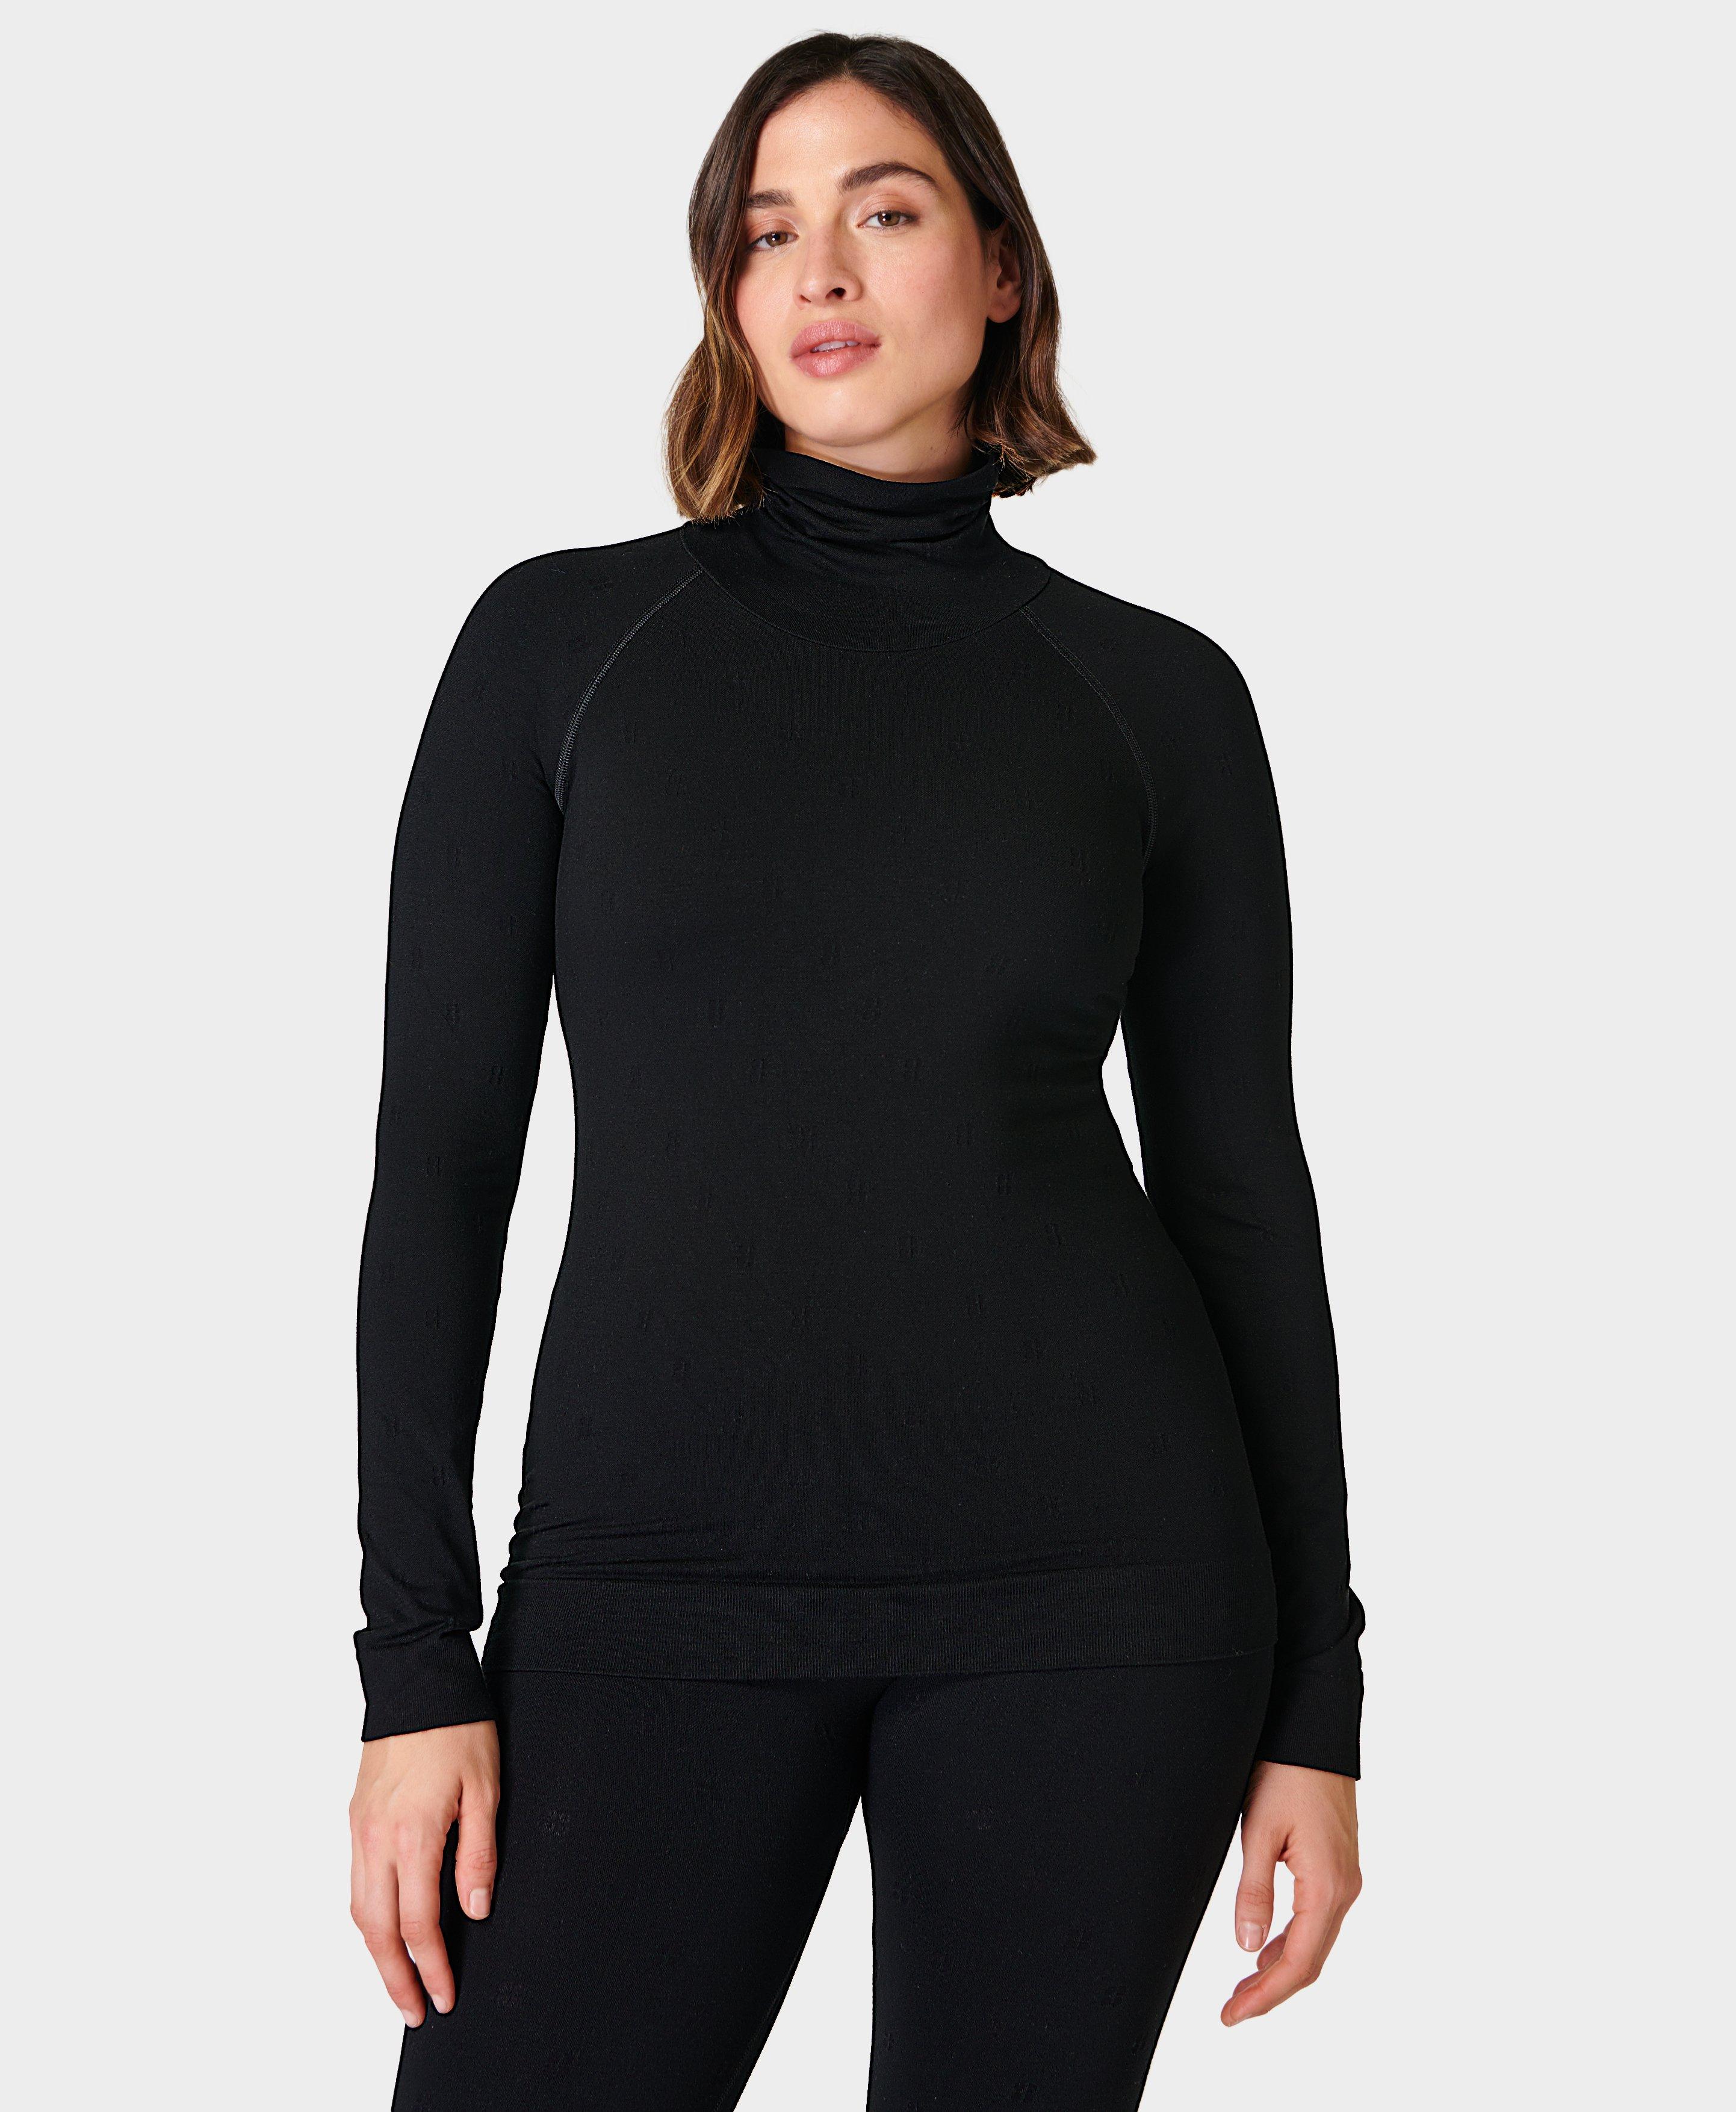 Modal Dot High Neck Jacquard Base Layer Top - Black, Women's Ski Clothes